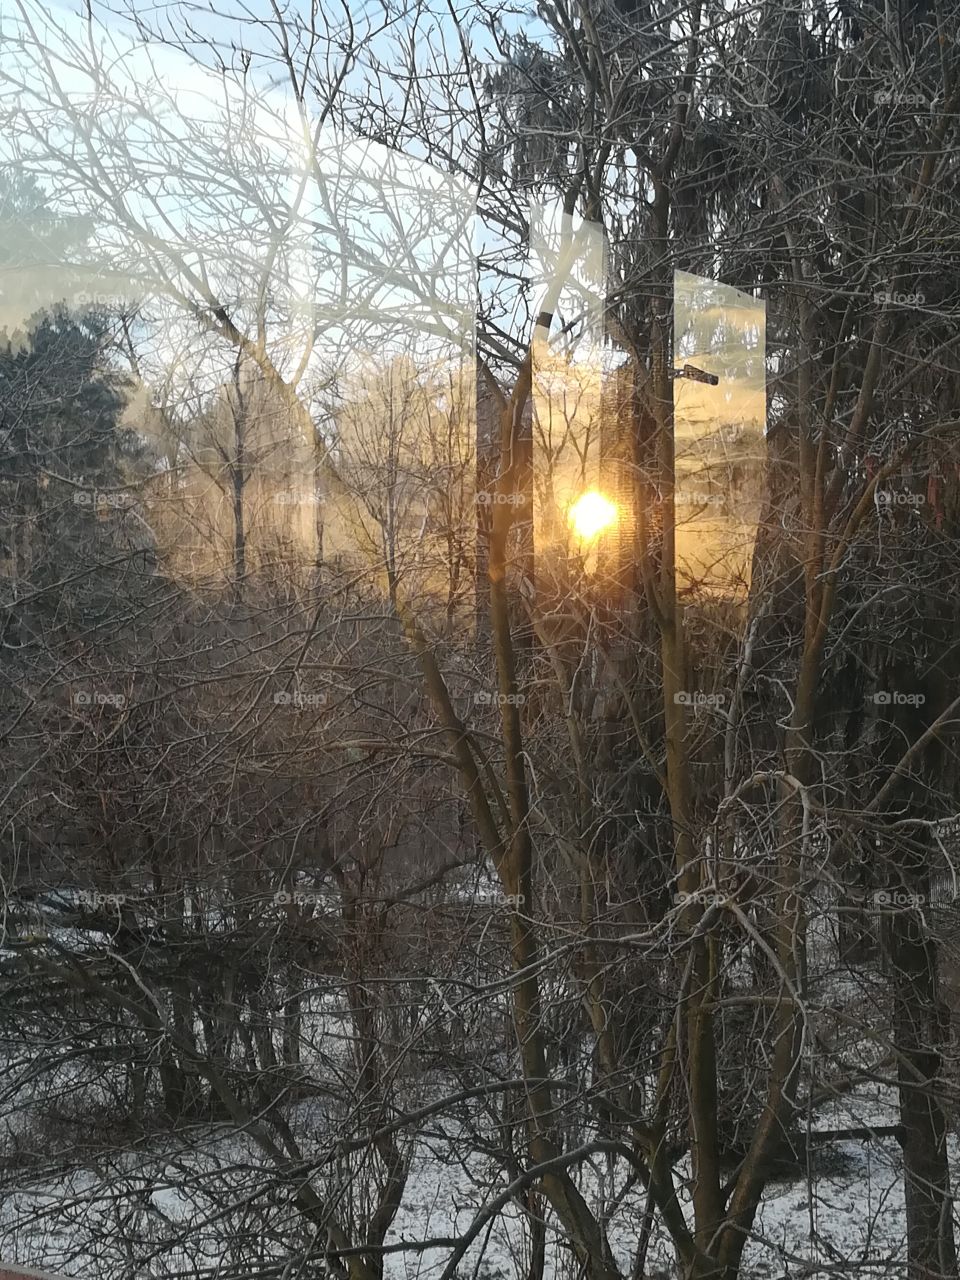 Sunrise reflection